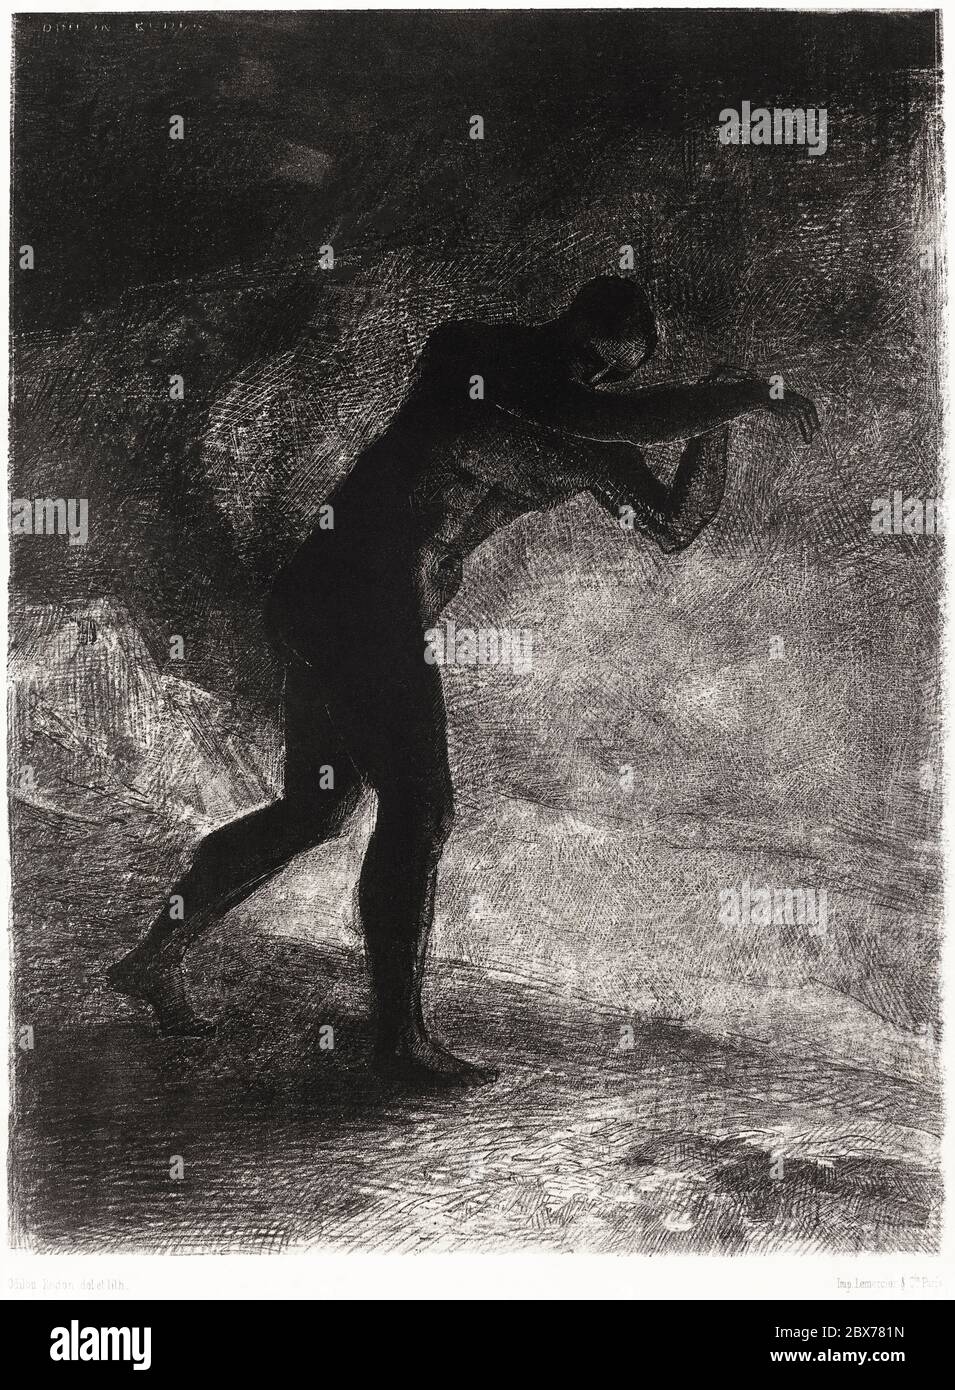 Et l'homme apparut, questionnant la Terre d'où il est apparu et qui l'attire, il fit son chemin vers la sombre luminosité (1883) par Odilon Redon. Banque D'Images